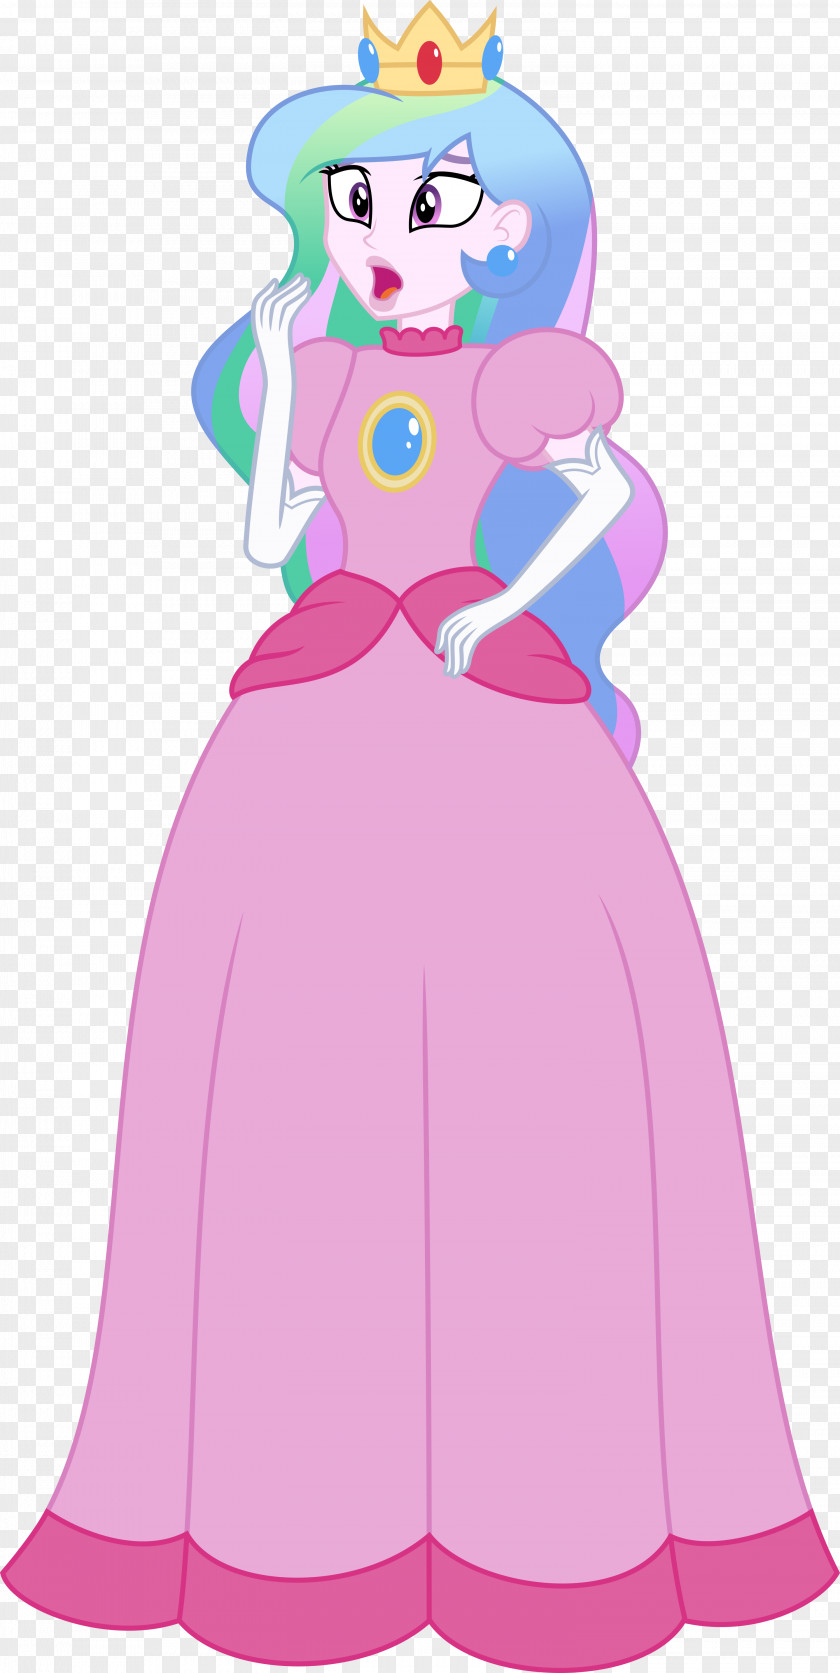 Princess Peach Mario Bros. Rosalina Bowser PNG